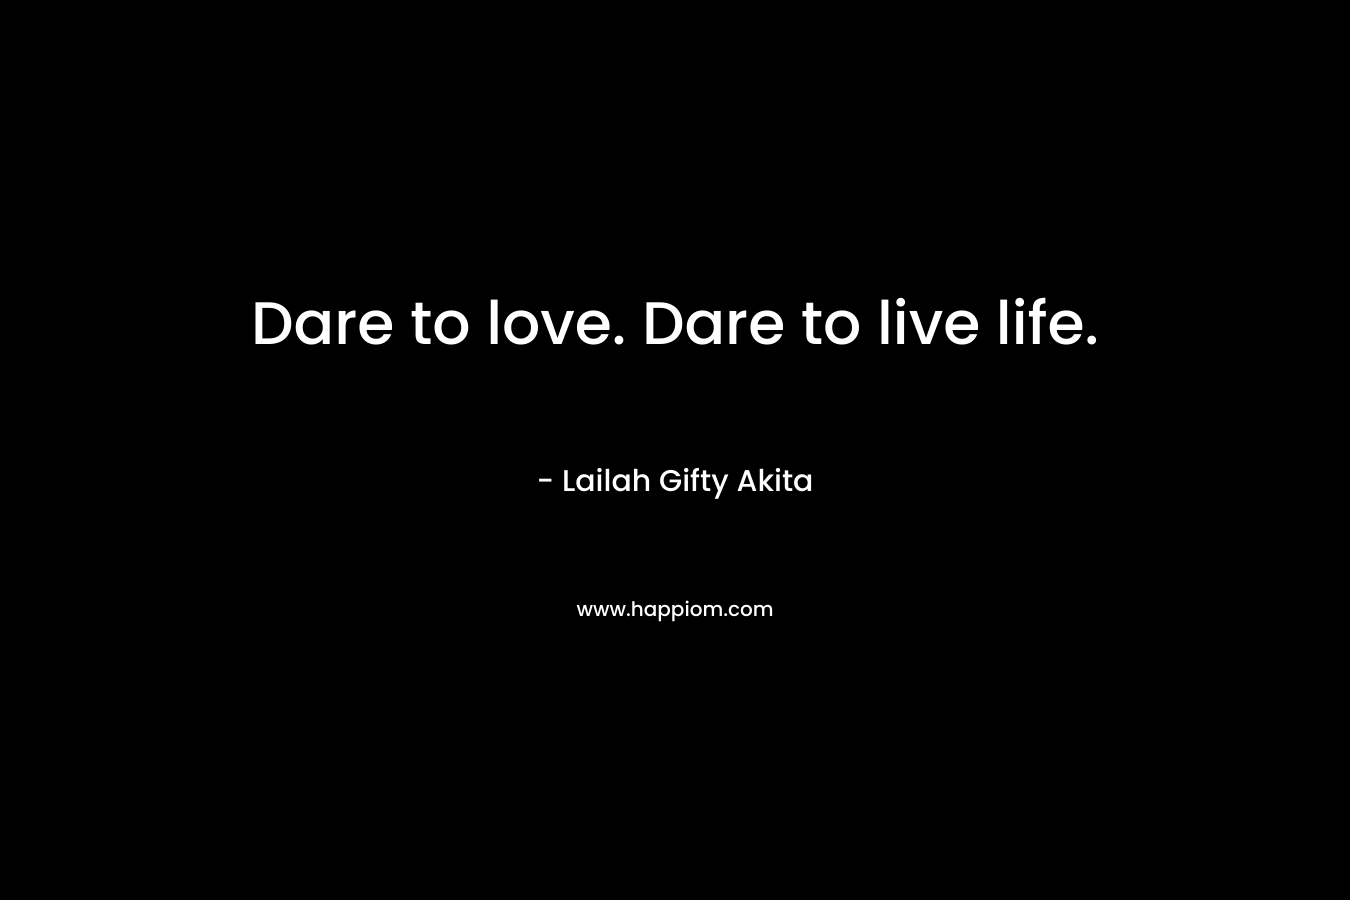 Dare to love. Dare to live life.